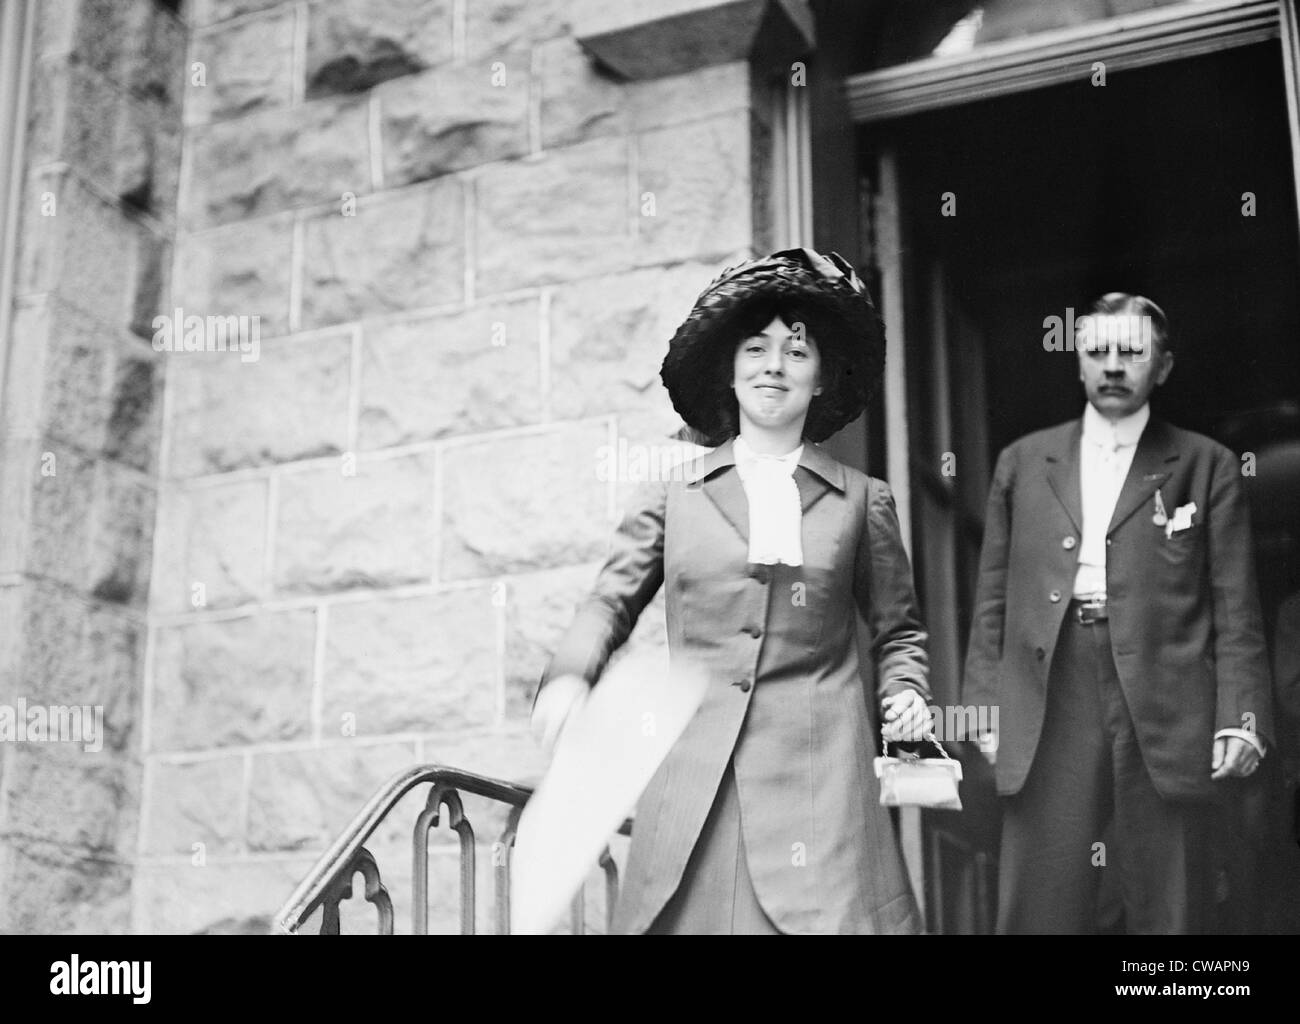 Evelyn Nesbit Thaw (1884-1967), épouse du meurtrier Harry Thaw, transportant un ventilateur au cours de l'été 1909. Nesbit a été interprété par Banque D'Images